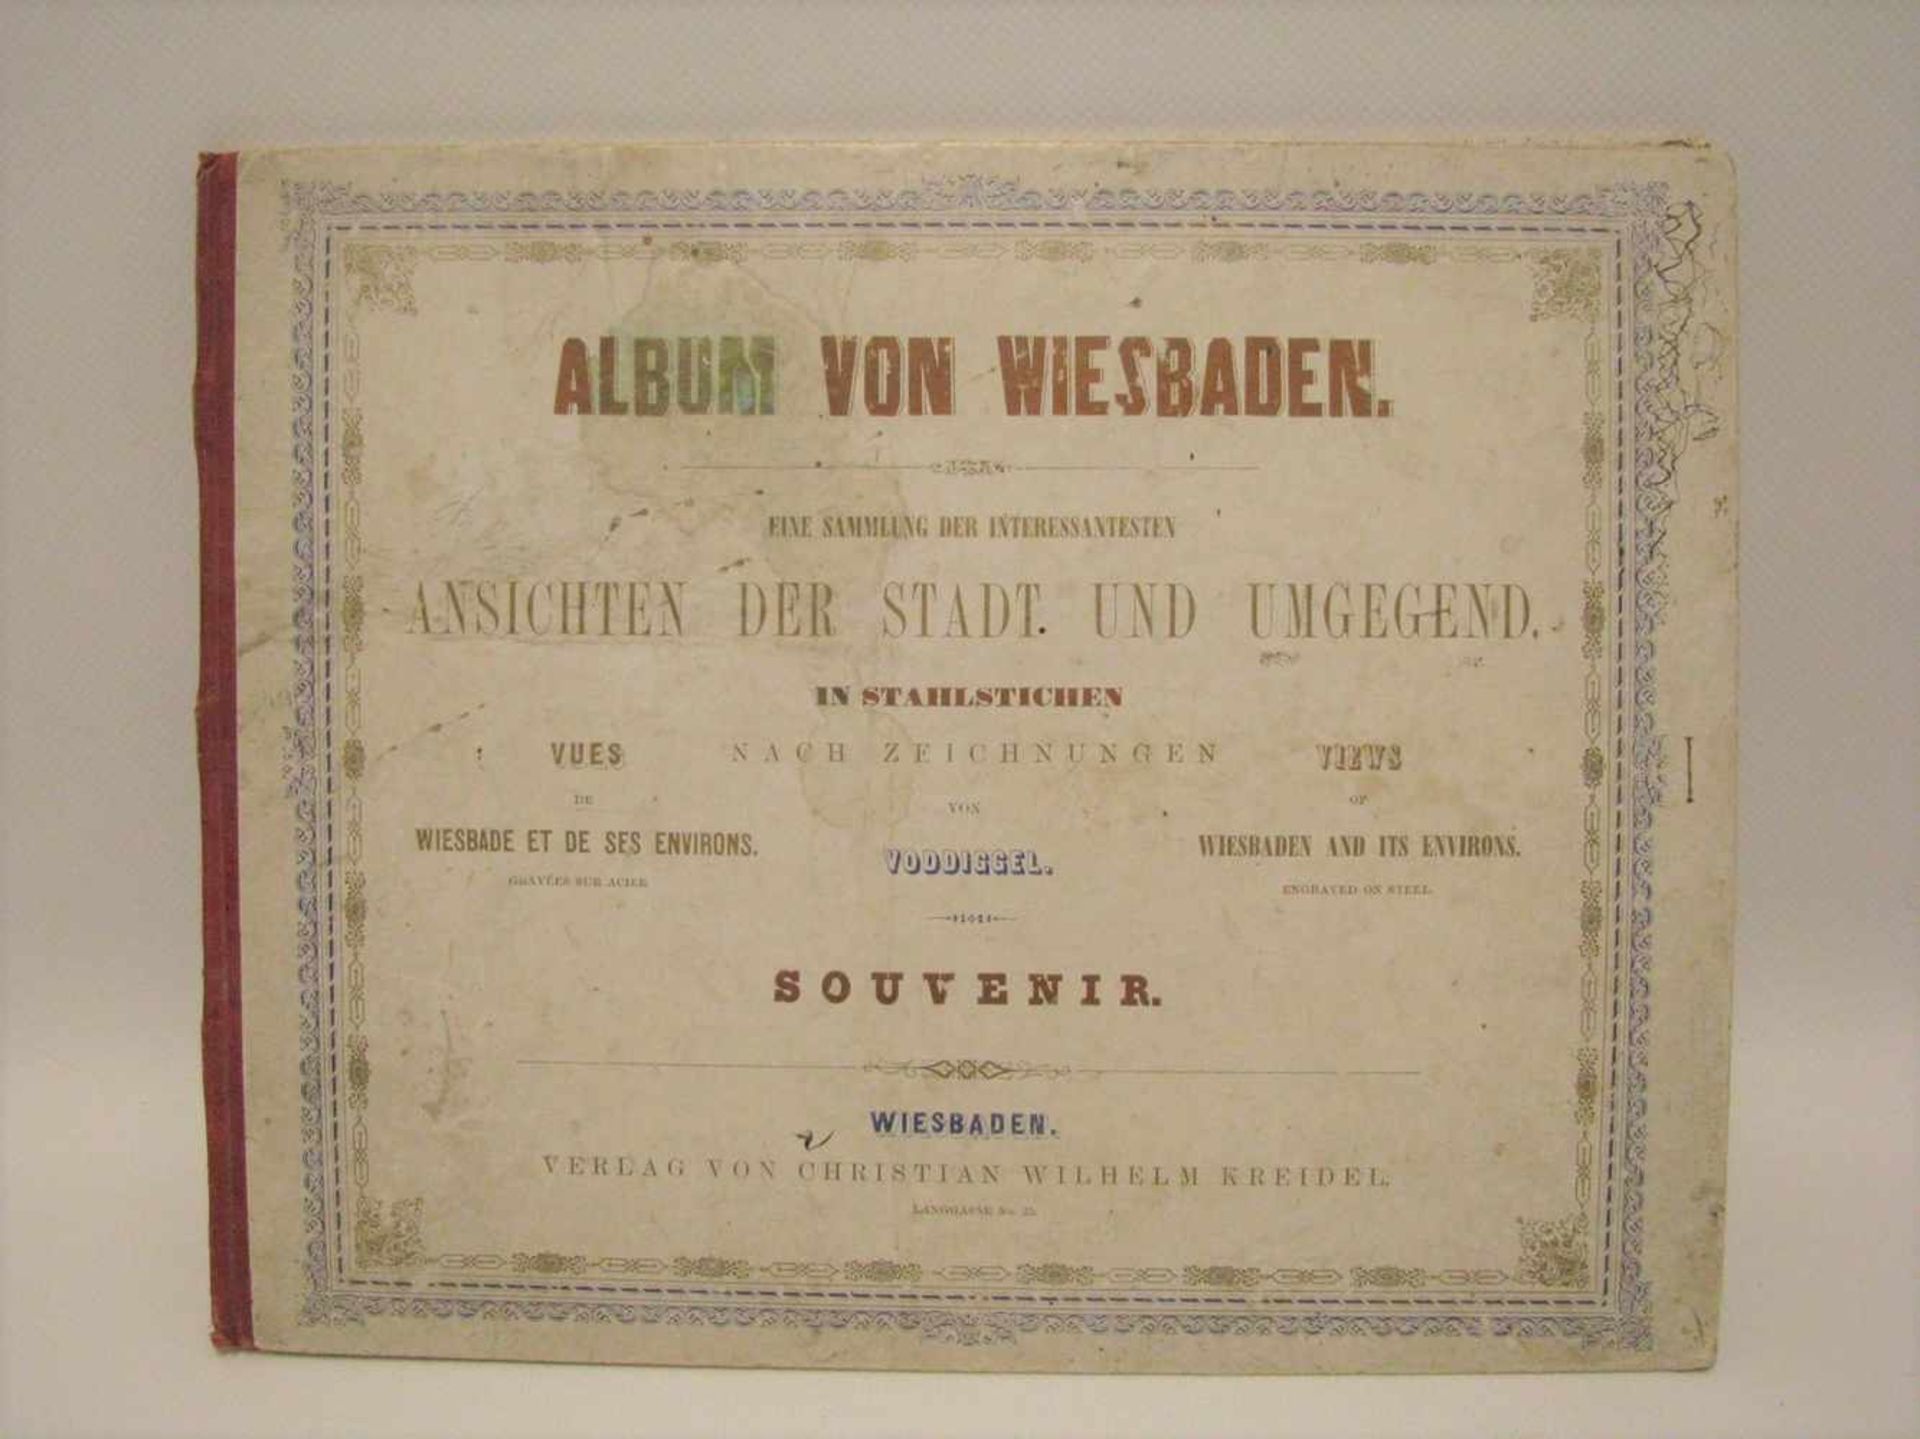 Album von Wiesbaden mit 9 Kupferstichen, 23 x 29 cm.- - -19.00 % buyer's premium on the hammer